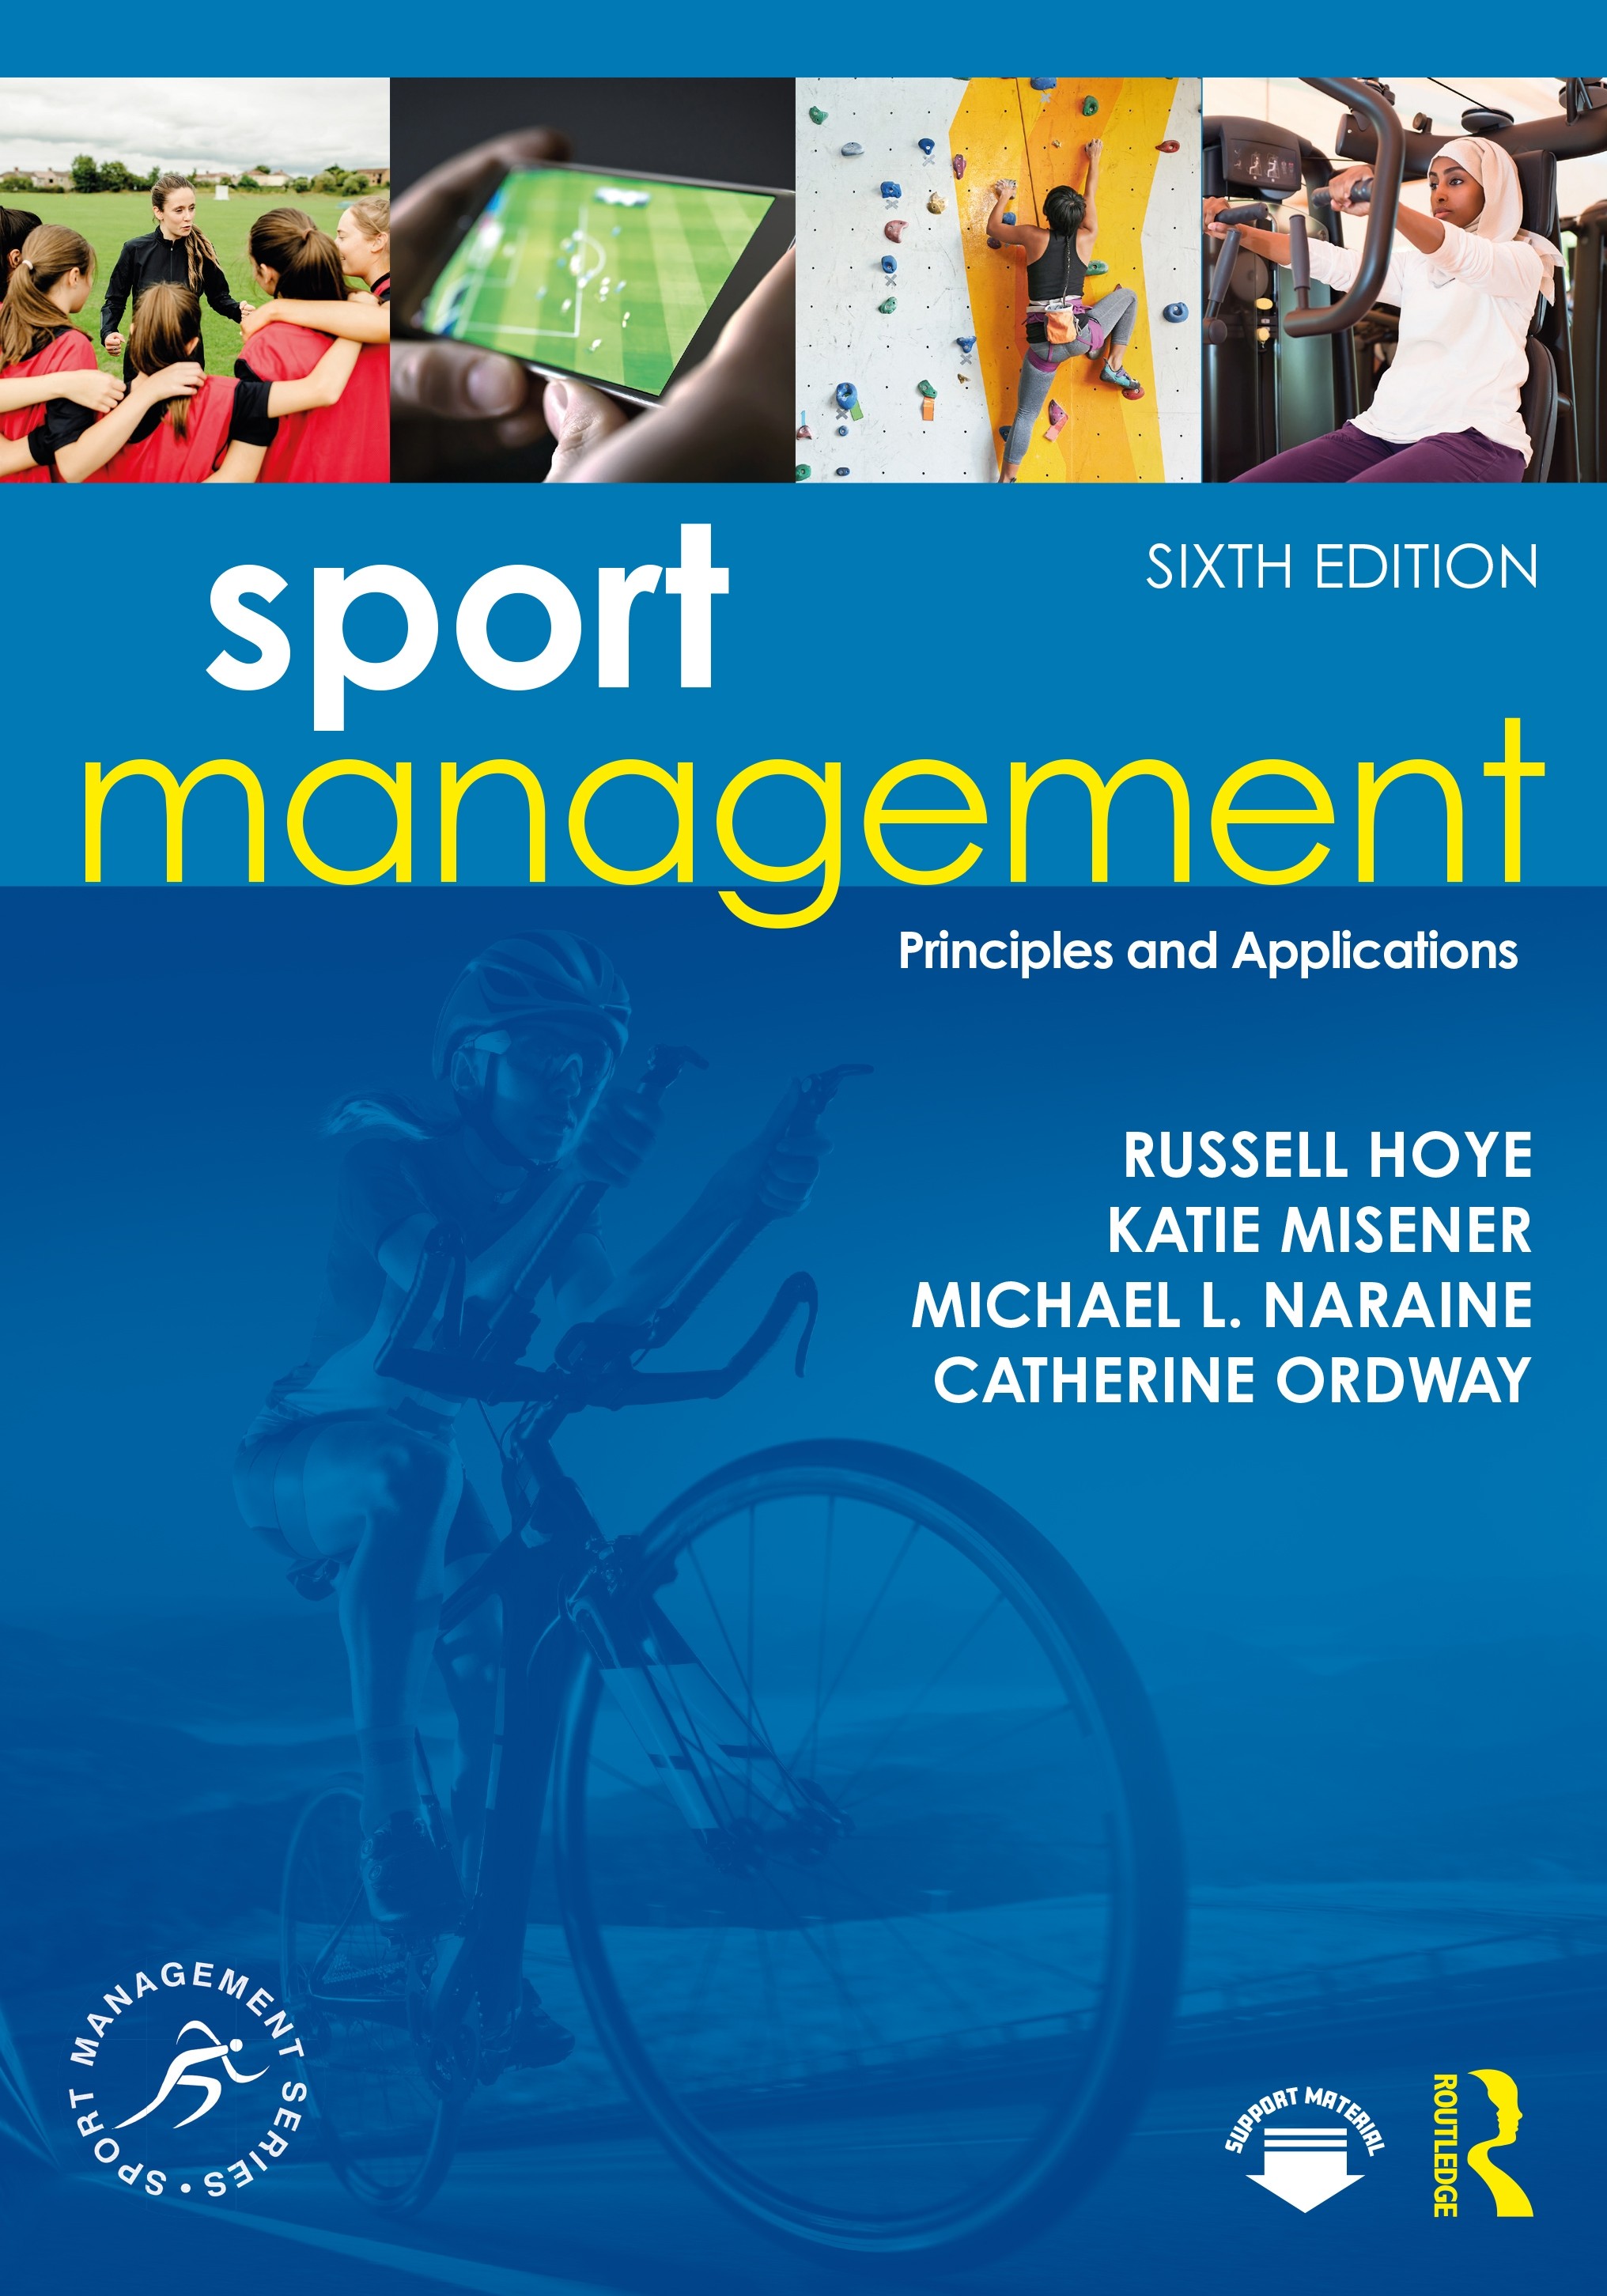 case studies sport management education